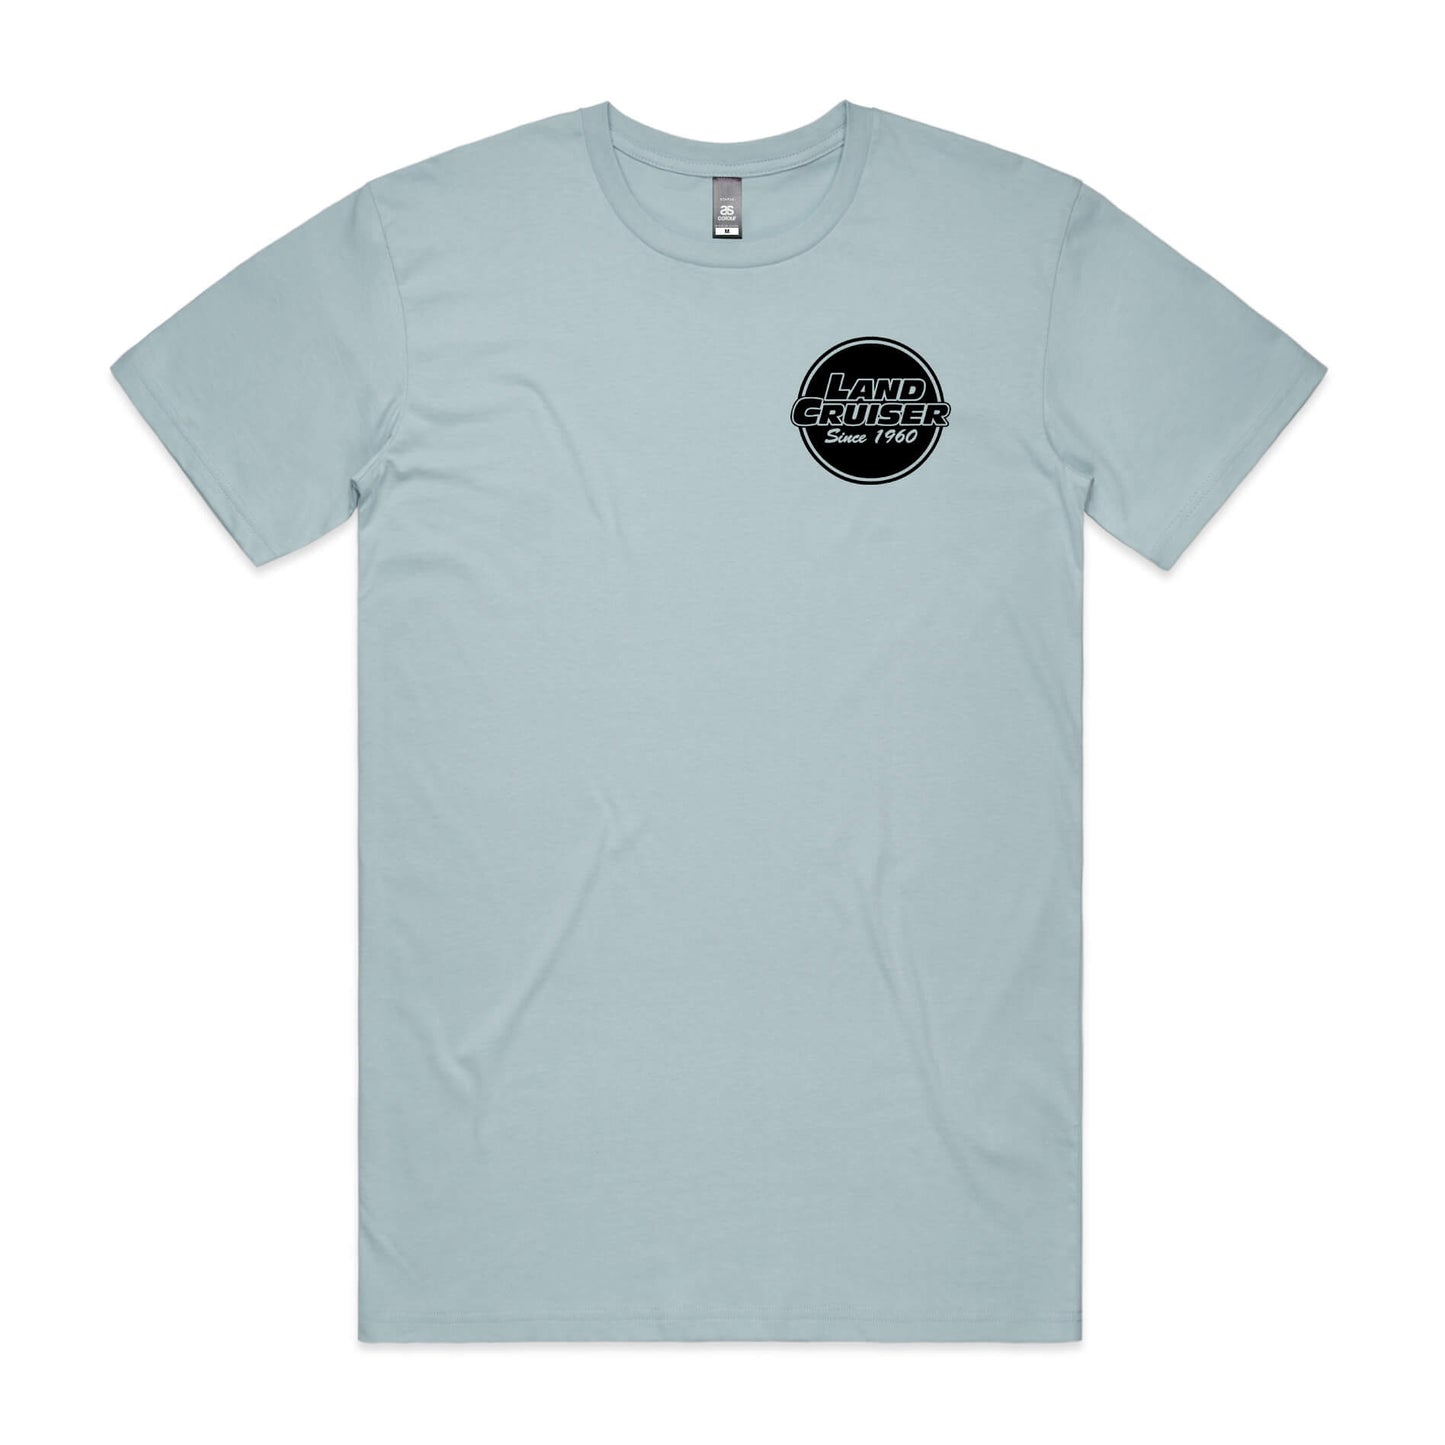 LandCruiser T-Shirt